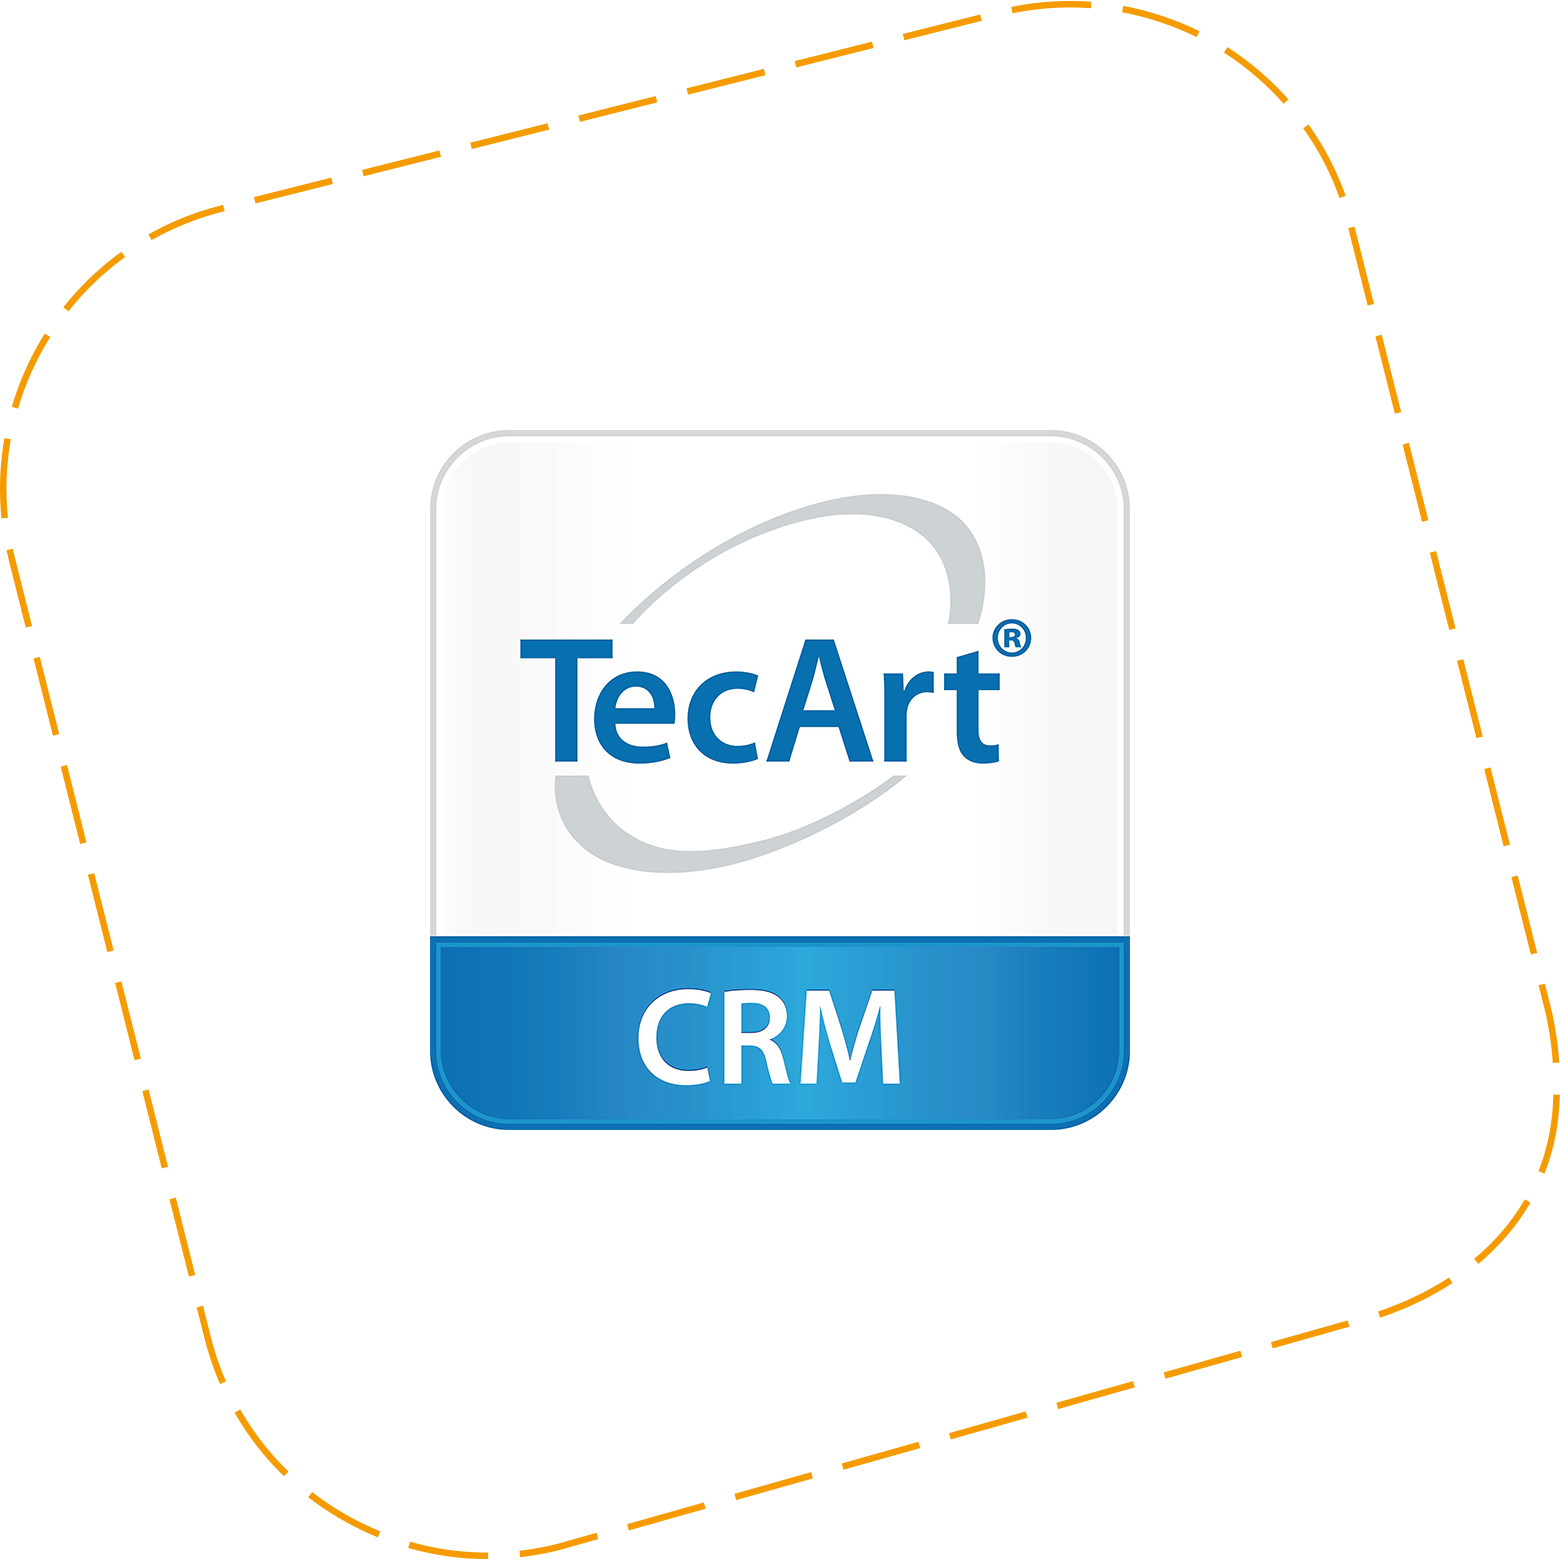 technologiepartner-tecart-crm.jpg